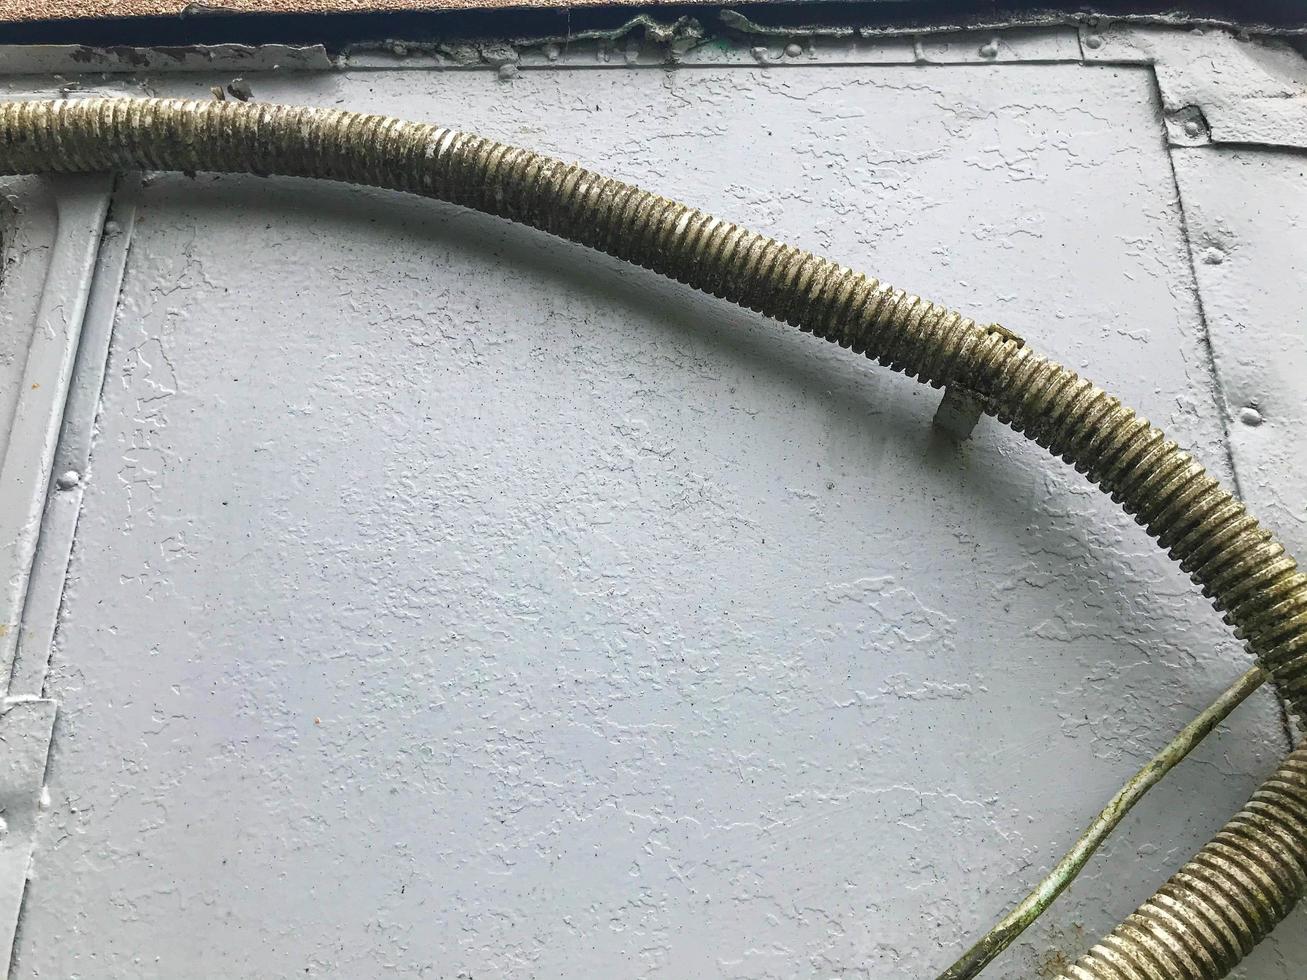 gruesos cables de color verde grisáceo cuelgan de una lámina de metal gris. cables para transmitir electricidad a la casa. líneas eléctricas caseras. musgo y hierba aparecieron en los cables foto